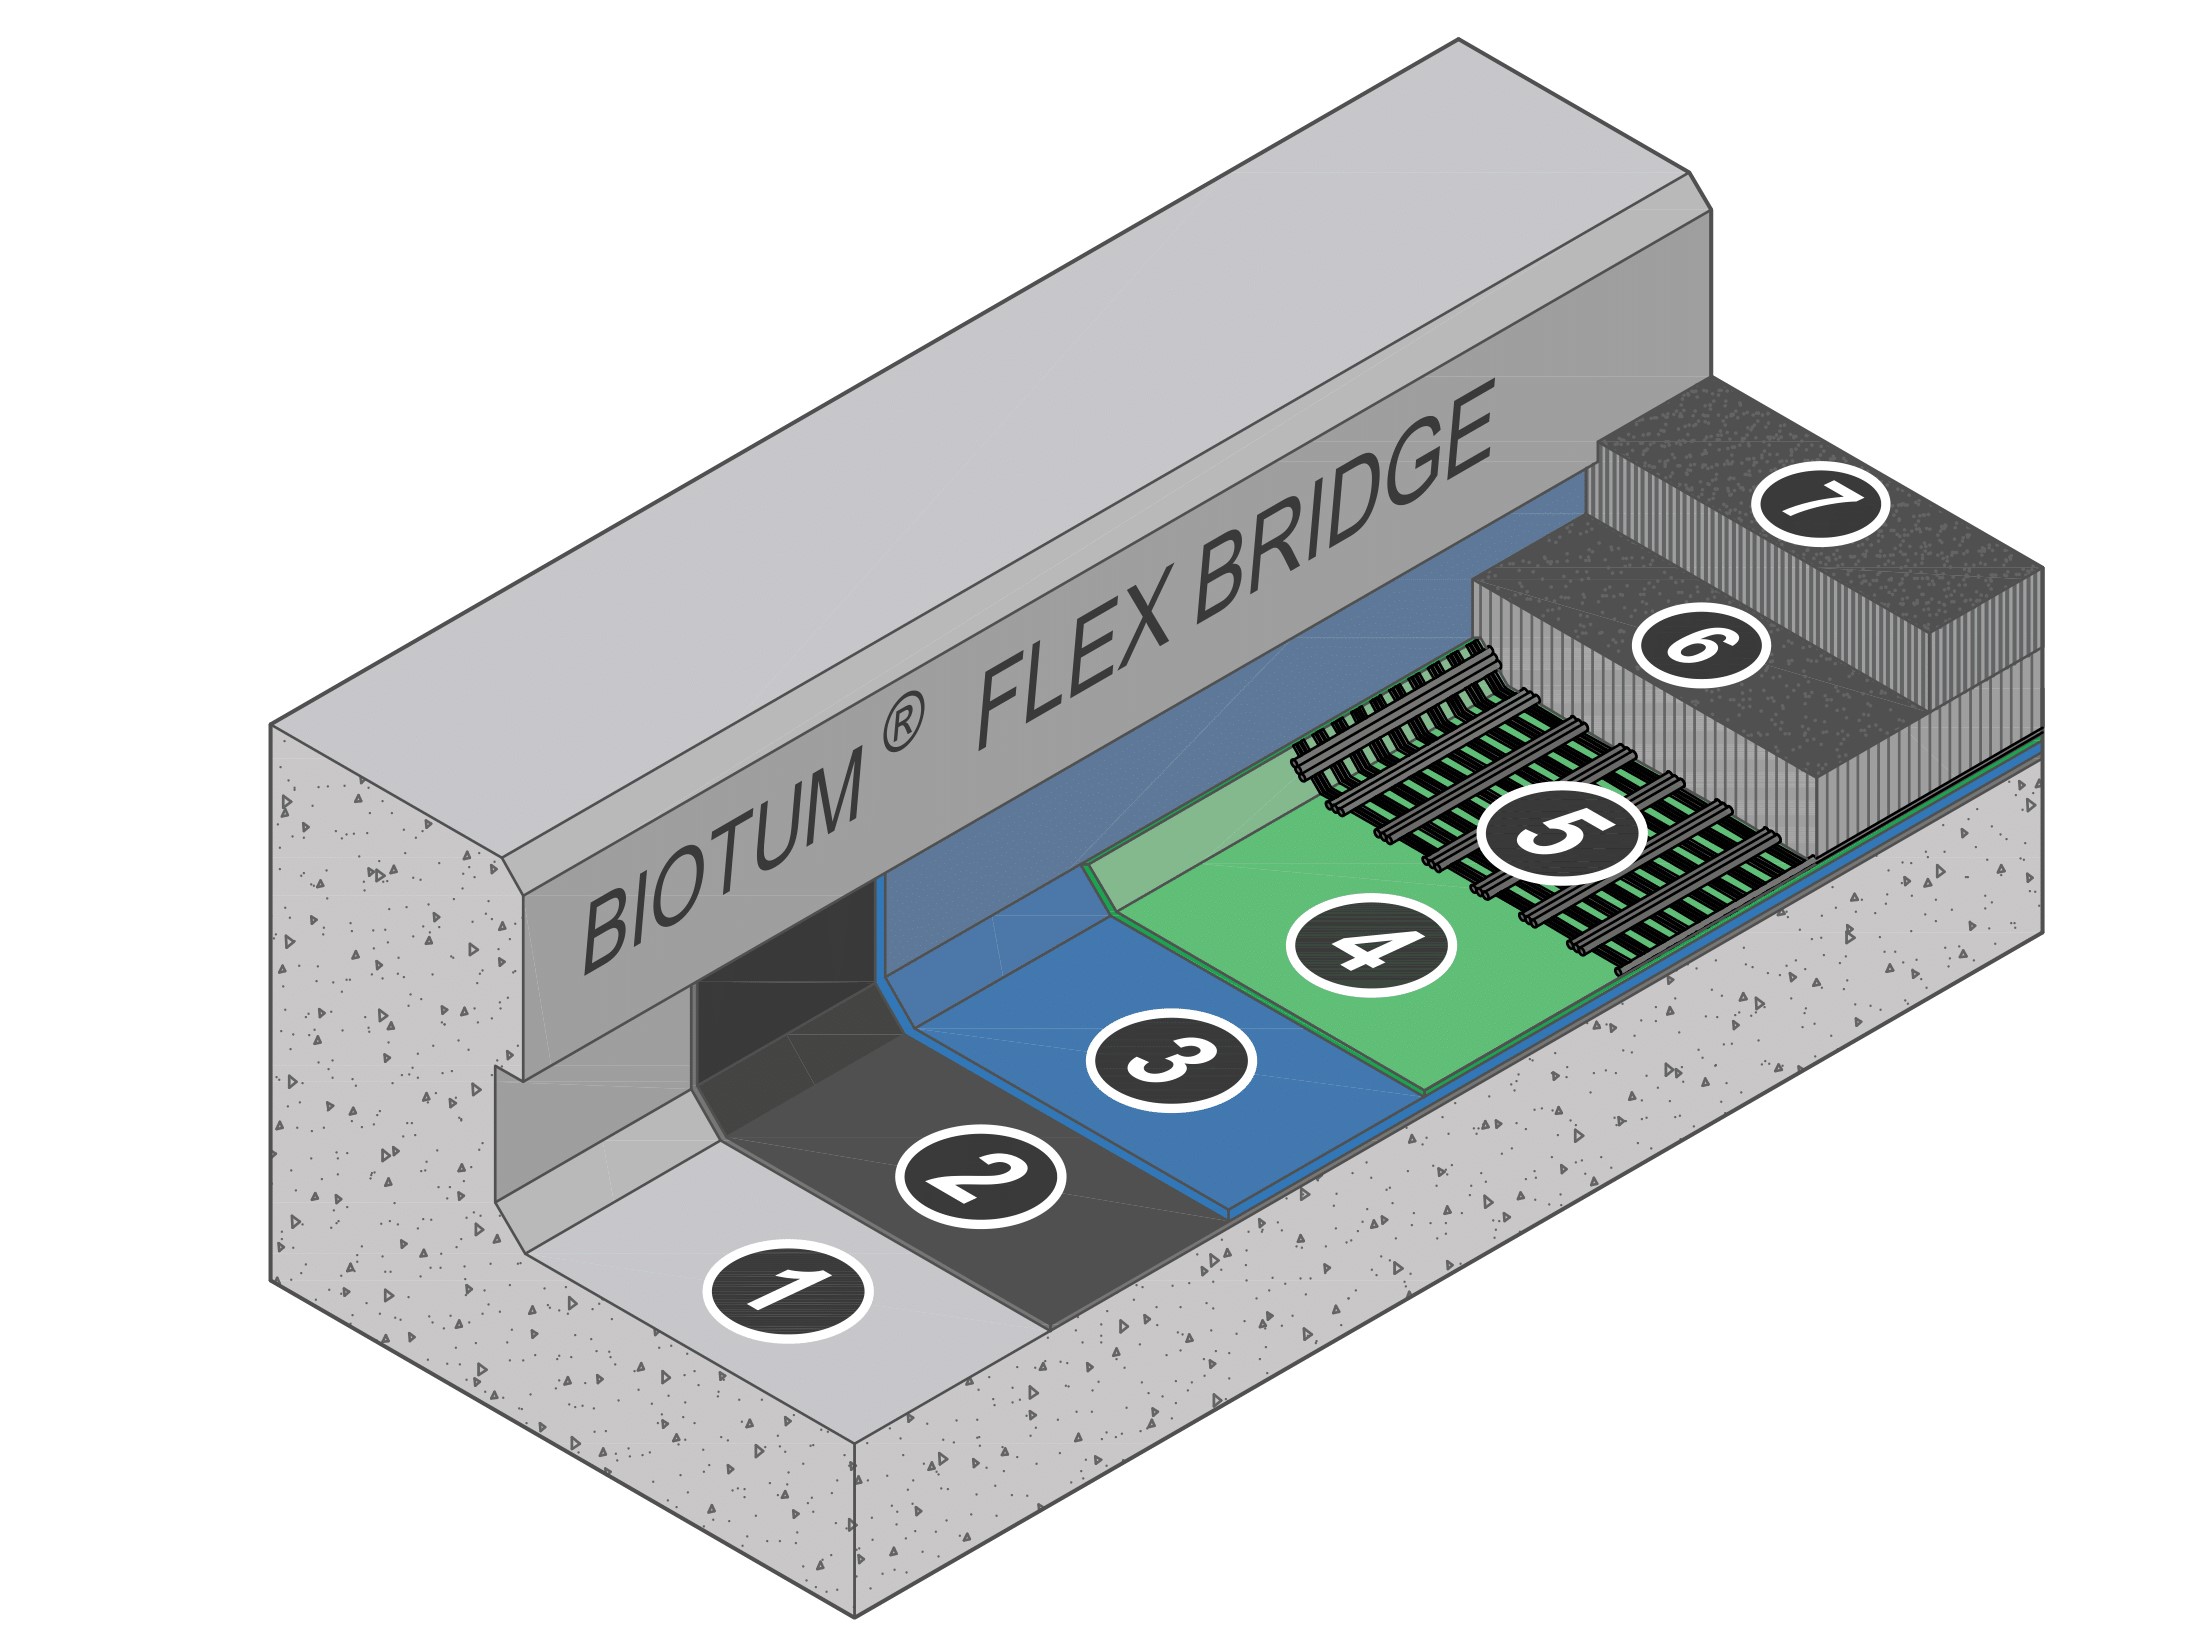 Конструкция системы BIOTUM FLEX BRIDGE